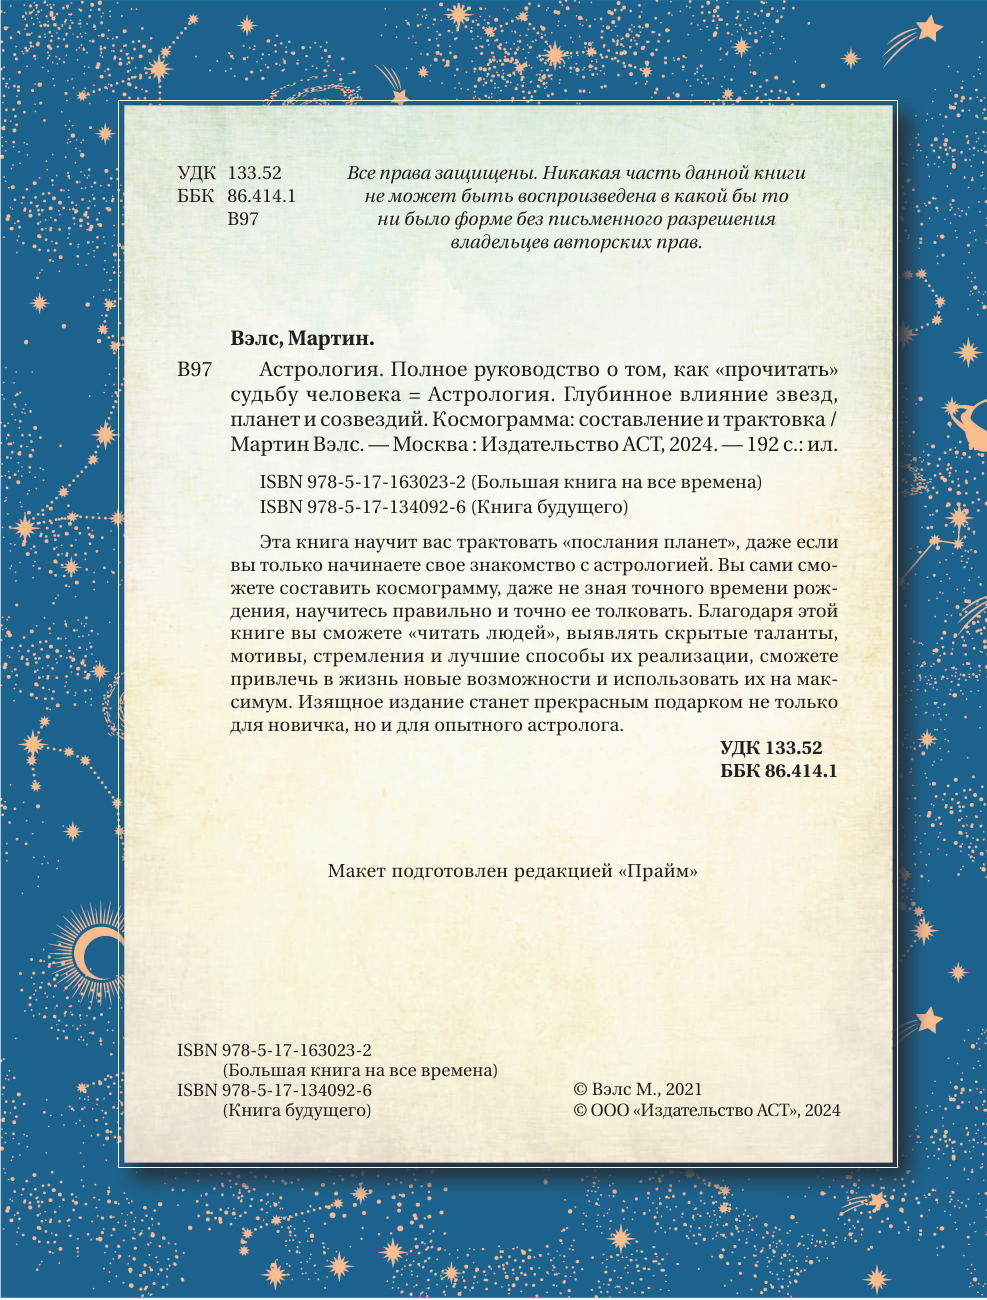 Вэлс Мартин  Астрология. Глубинное влияние звезд, планет и созвездий. Космограмма: составление и трактовка - страница 3